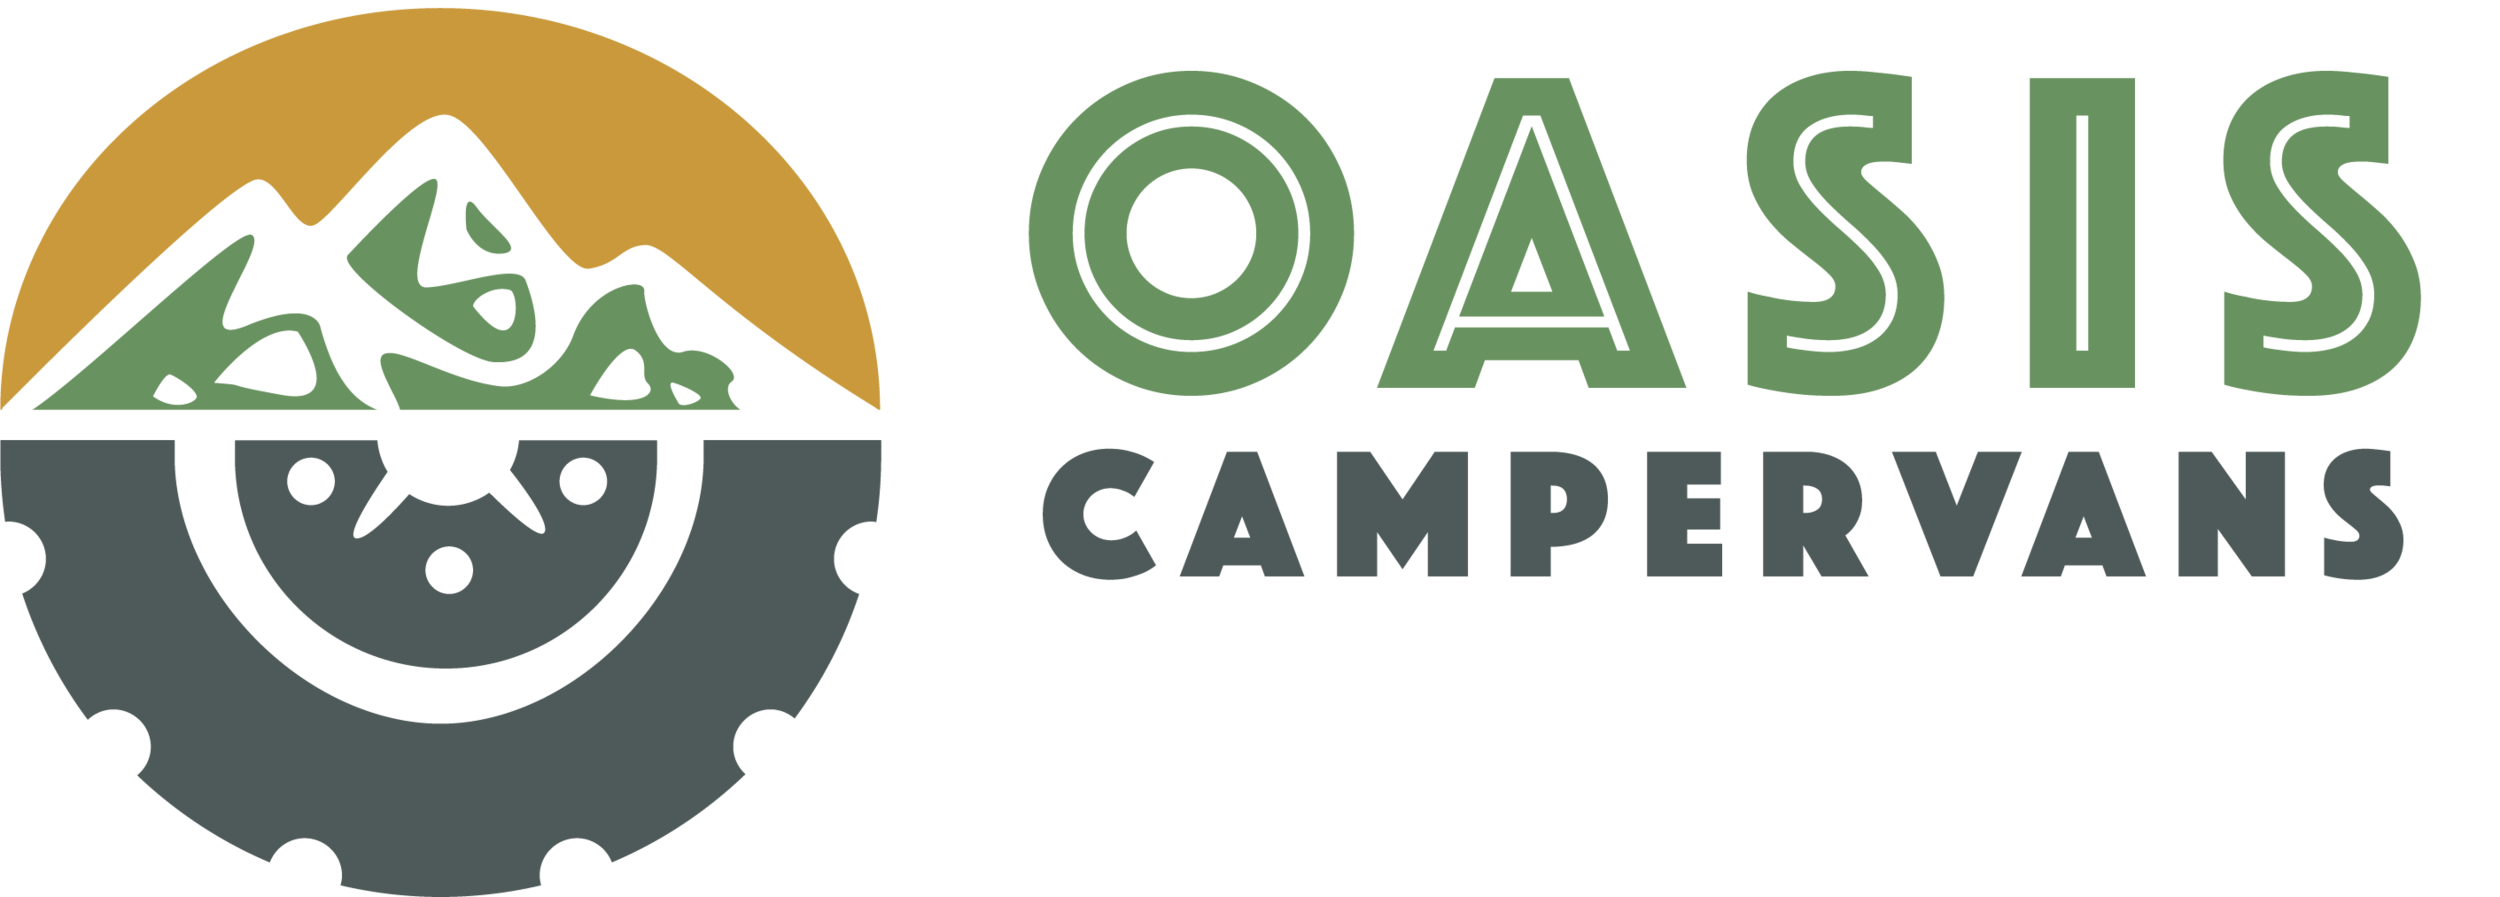 Camperlove, OASIS Kit Camper